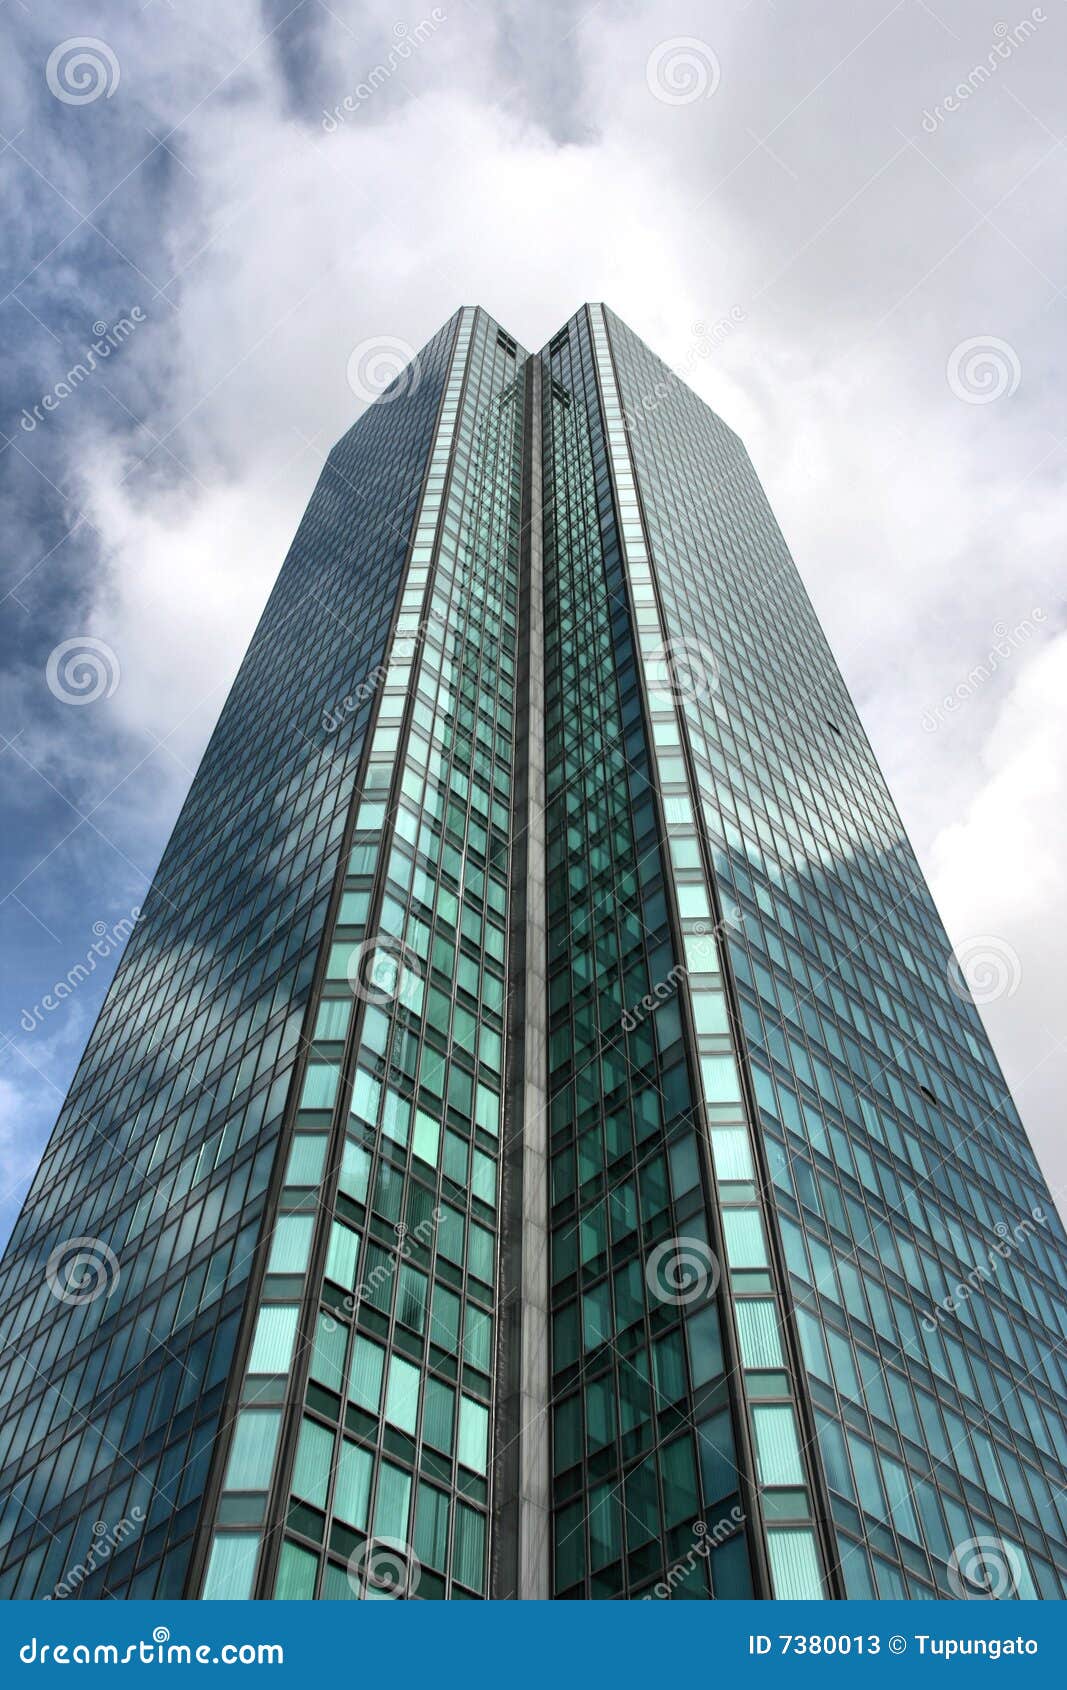 ουρανοξύστης του Παρισιού. η αμυντική περιοχή οκτώ αμιάντων του 2001 του 1995 gan κακόφημη Λα αφαιρούμενη το Παρίσι ουρανοξυστών χρήση γύρου δομών πιό ψηλή ήταν όποιοι